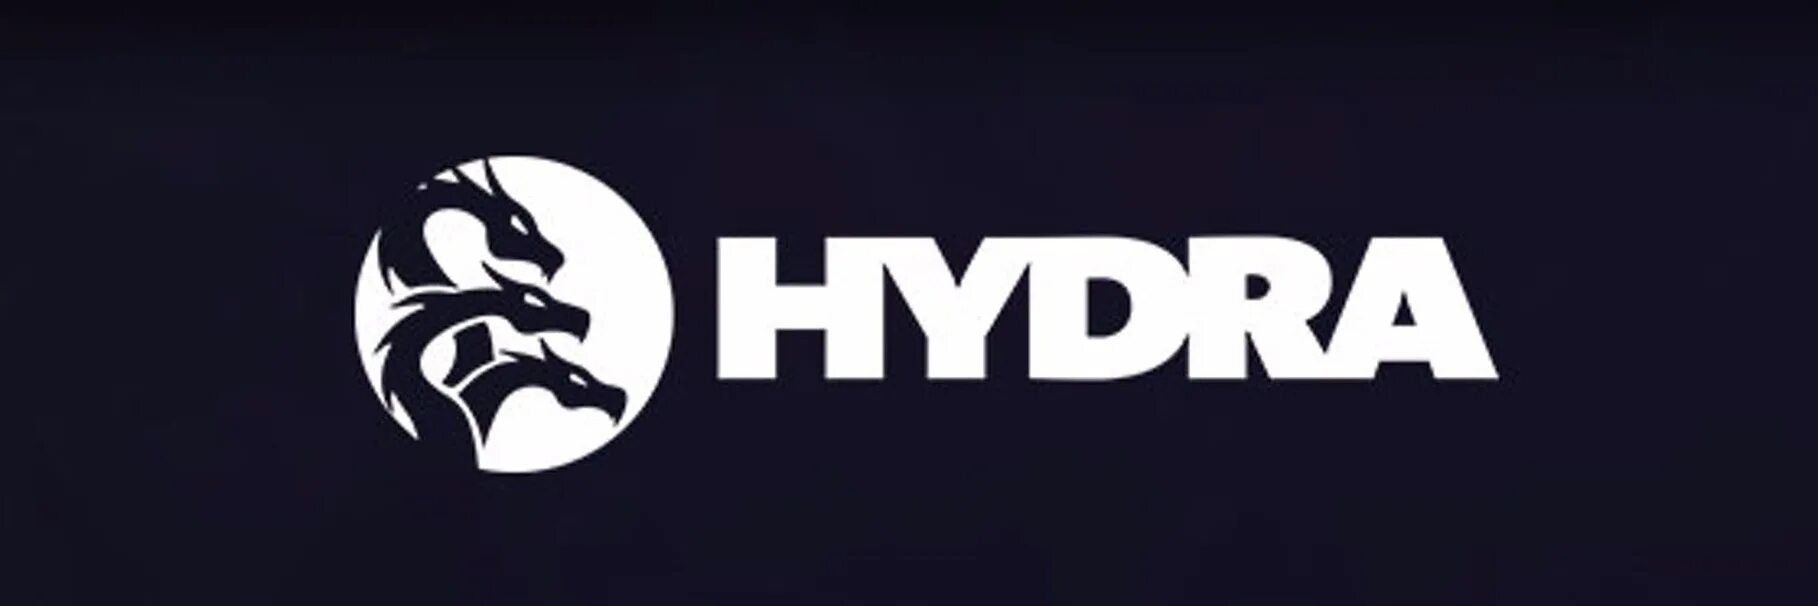 Hydra логотип. Логотип hydra Darknet. Лого гидры даркнет. Эмблема гидры магазин.